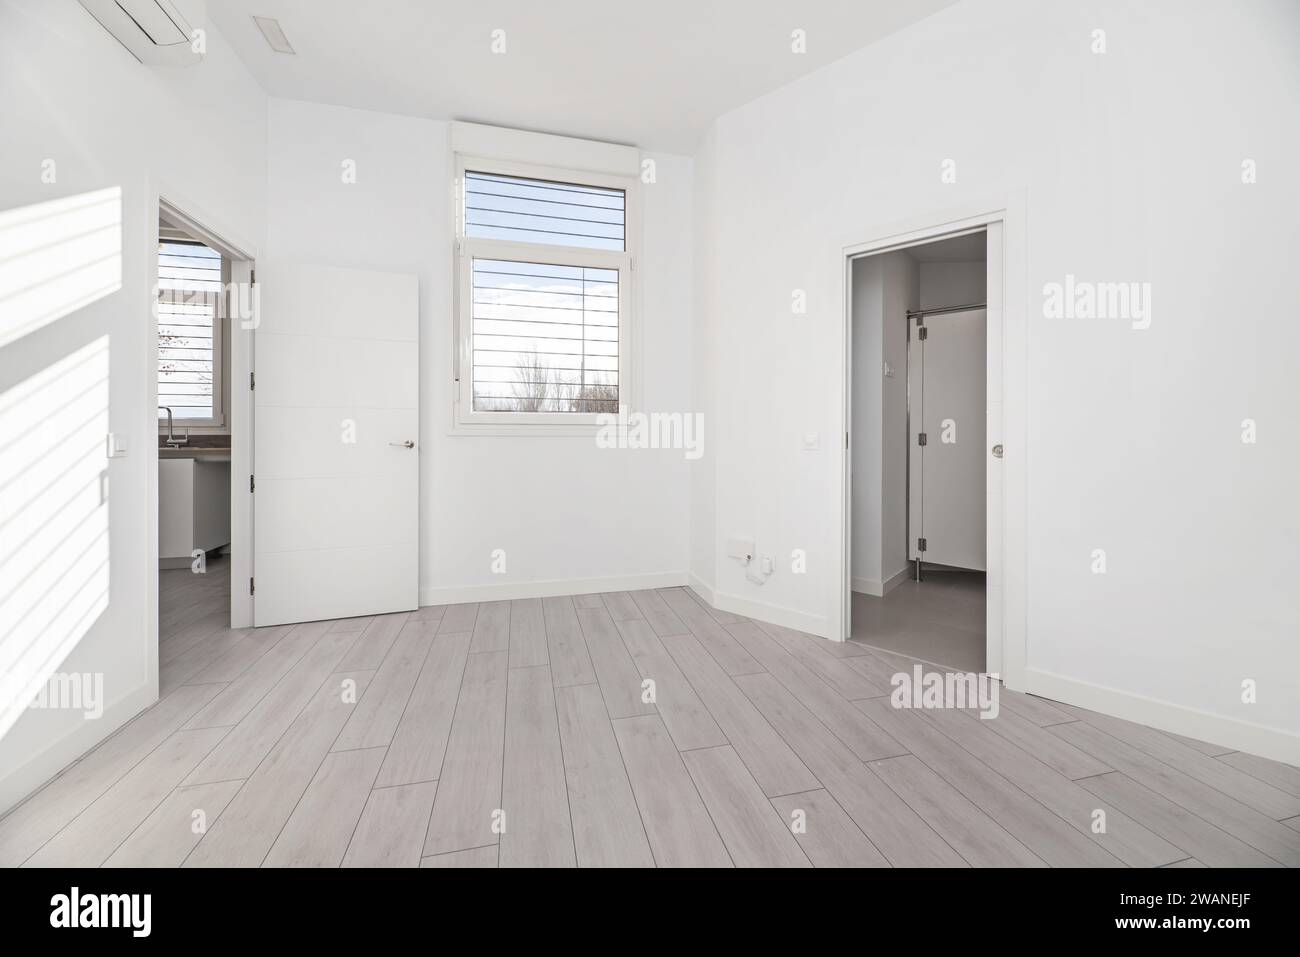 Una camera vuota in una casa al piano terra con pavimenti in parquet grigio, pareti dipinte di bianco e accesso a diverse camere Foto Stock